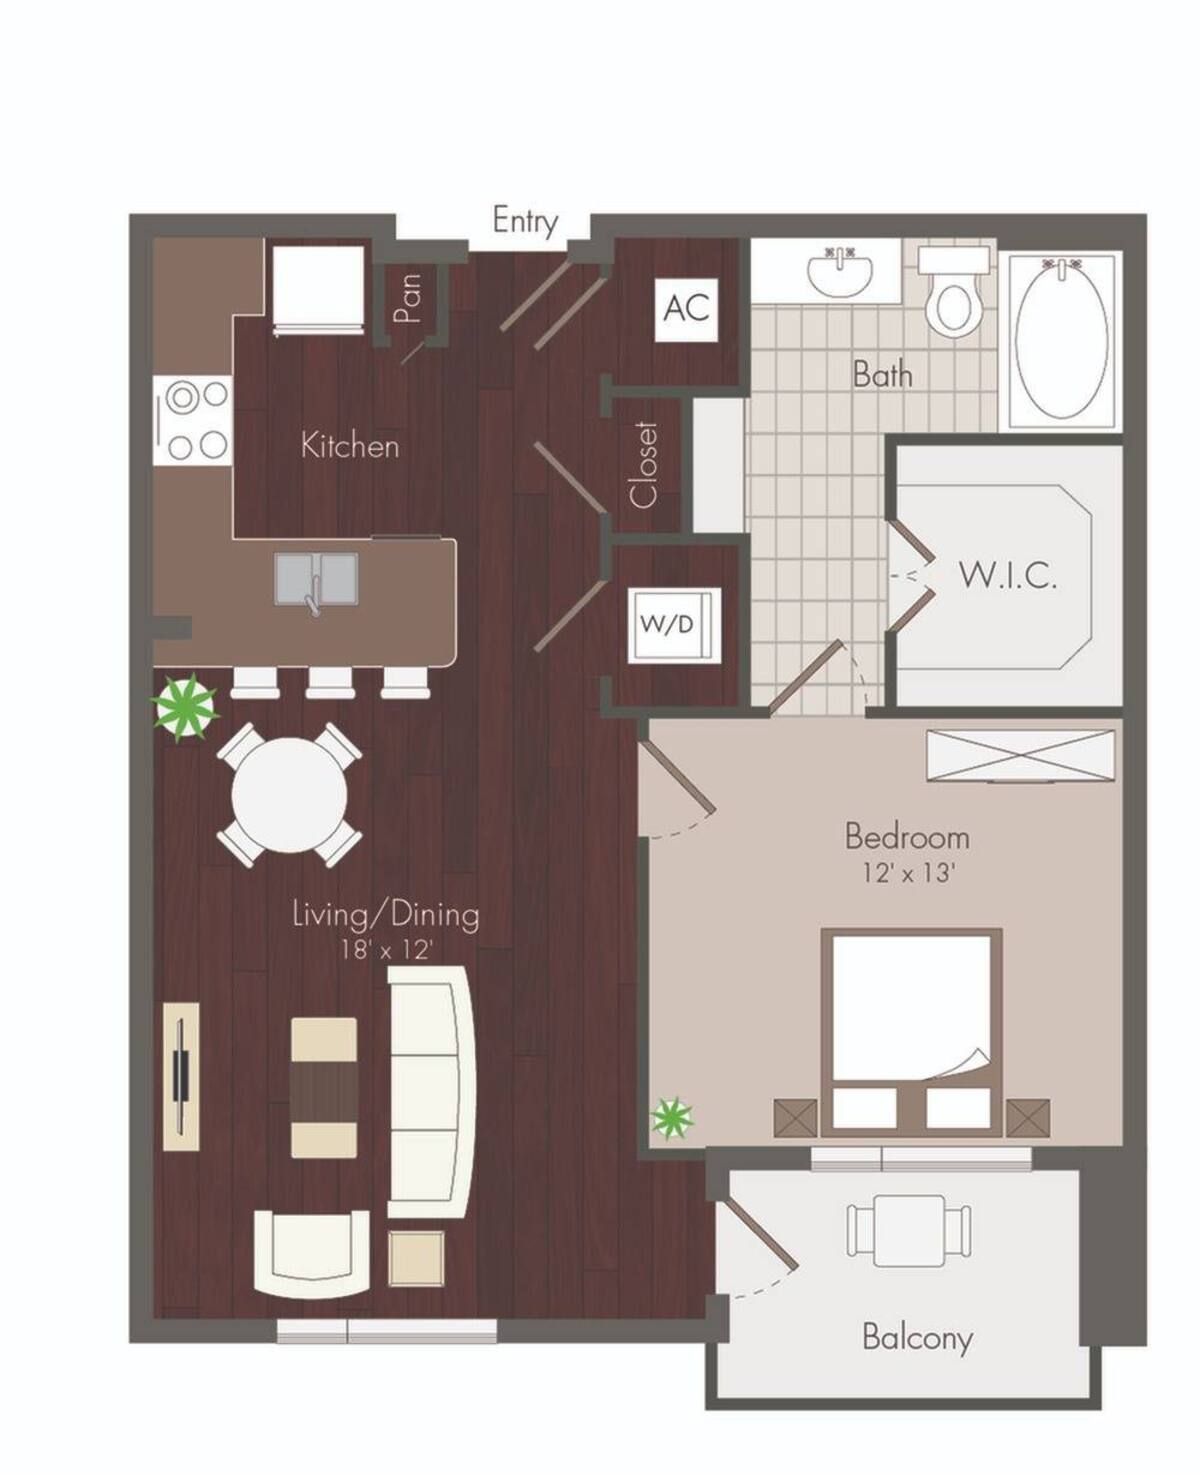 Floorplan diagram for Floyd, showing 1 bedroom